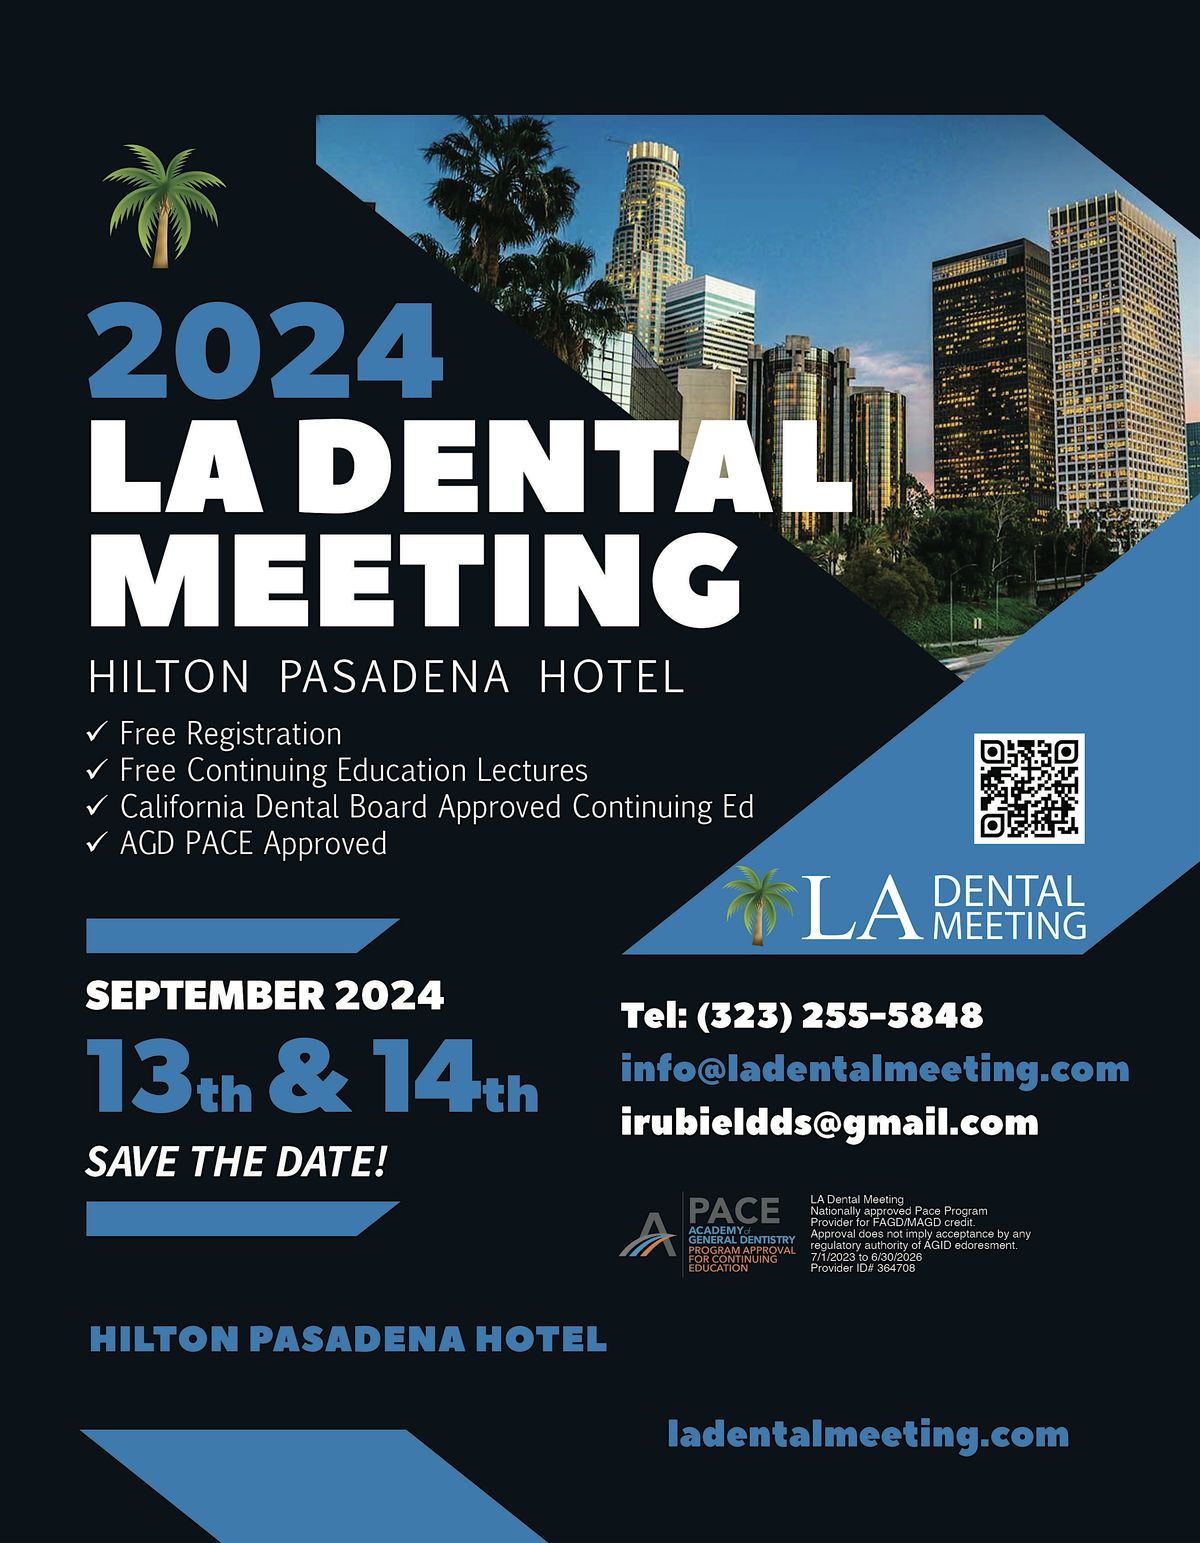 Los Angeles Dental Meeting 2024